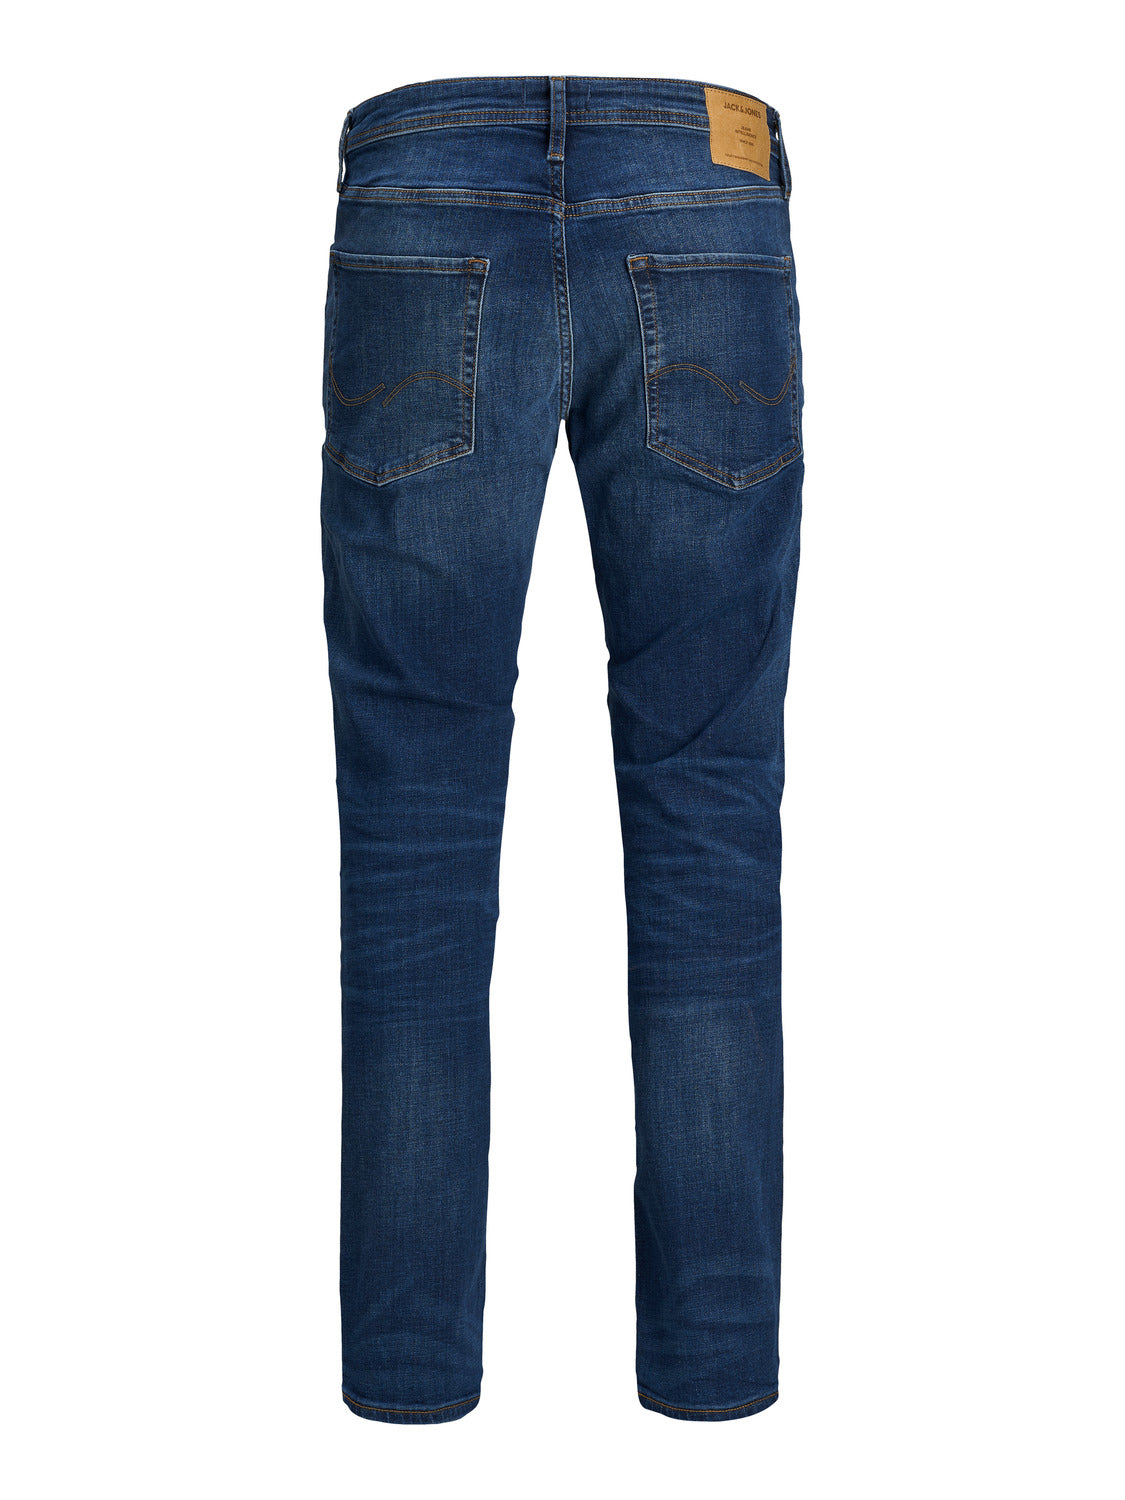 JJITIM Jeans - blue denim